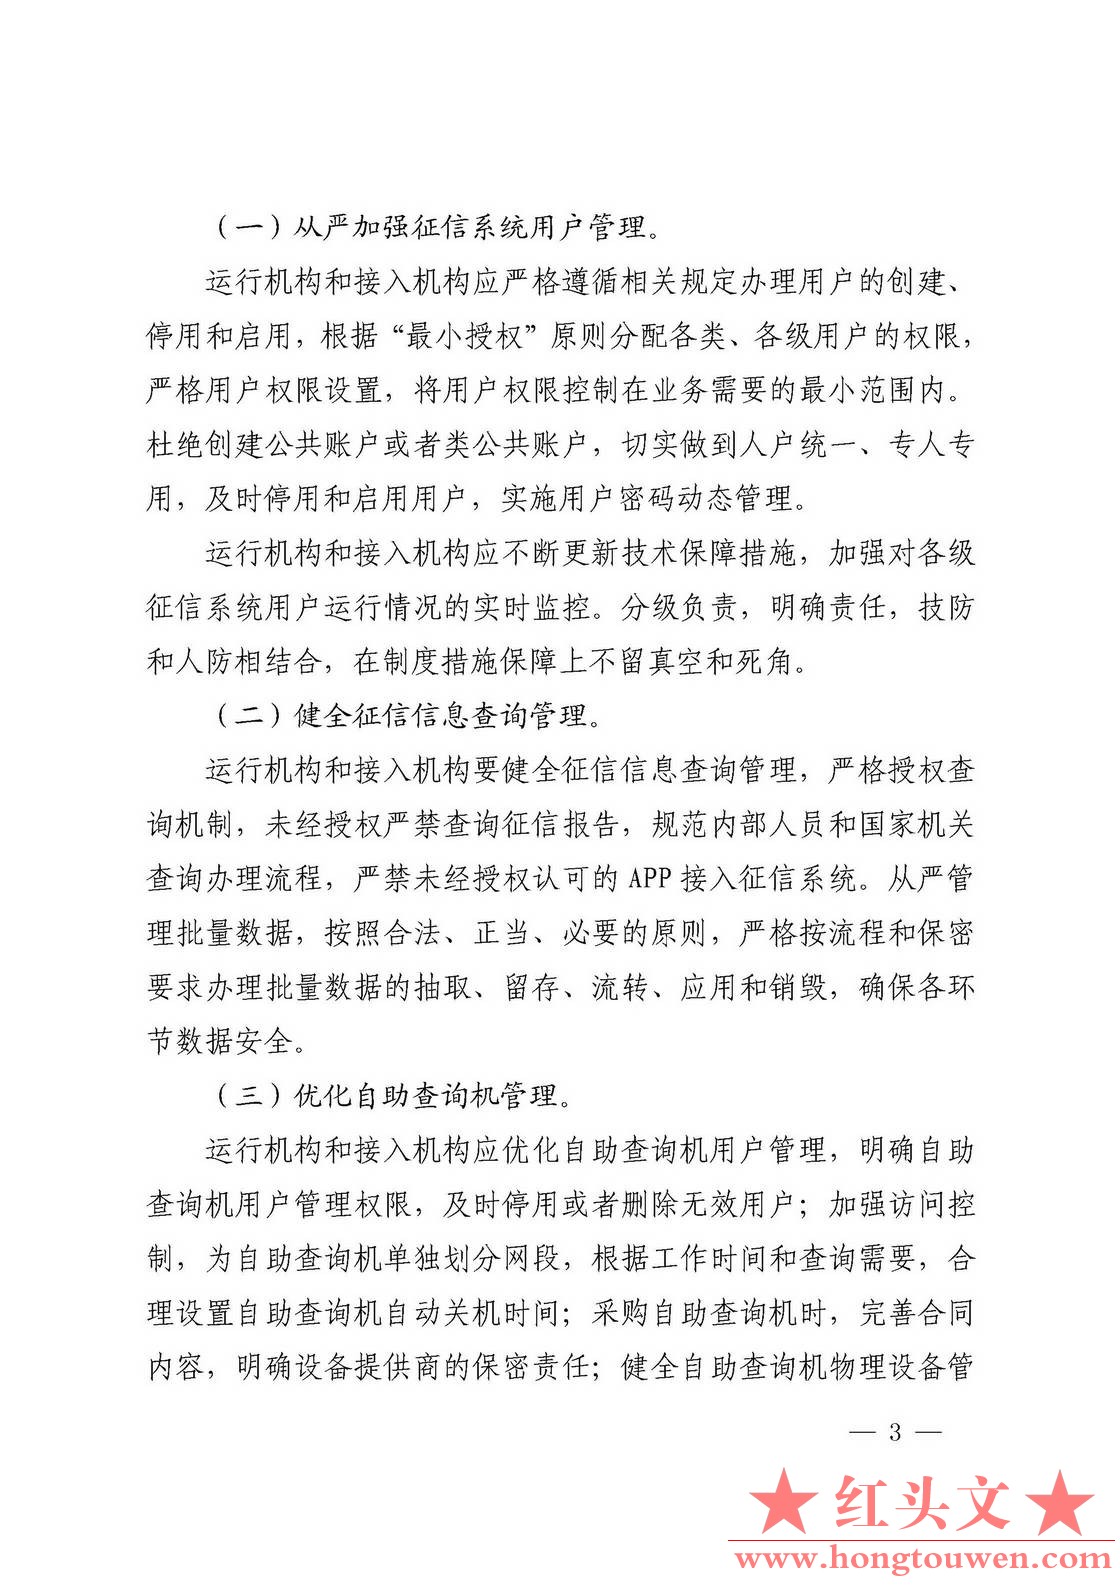 银发[2018]102号-中国人民银行关于进一步加强征信信息安全管理的通知_页面_03.jpg.jpg